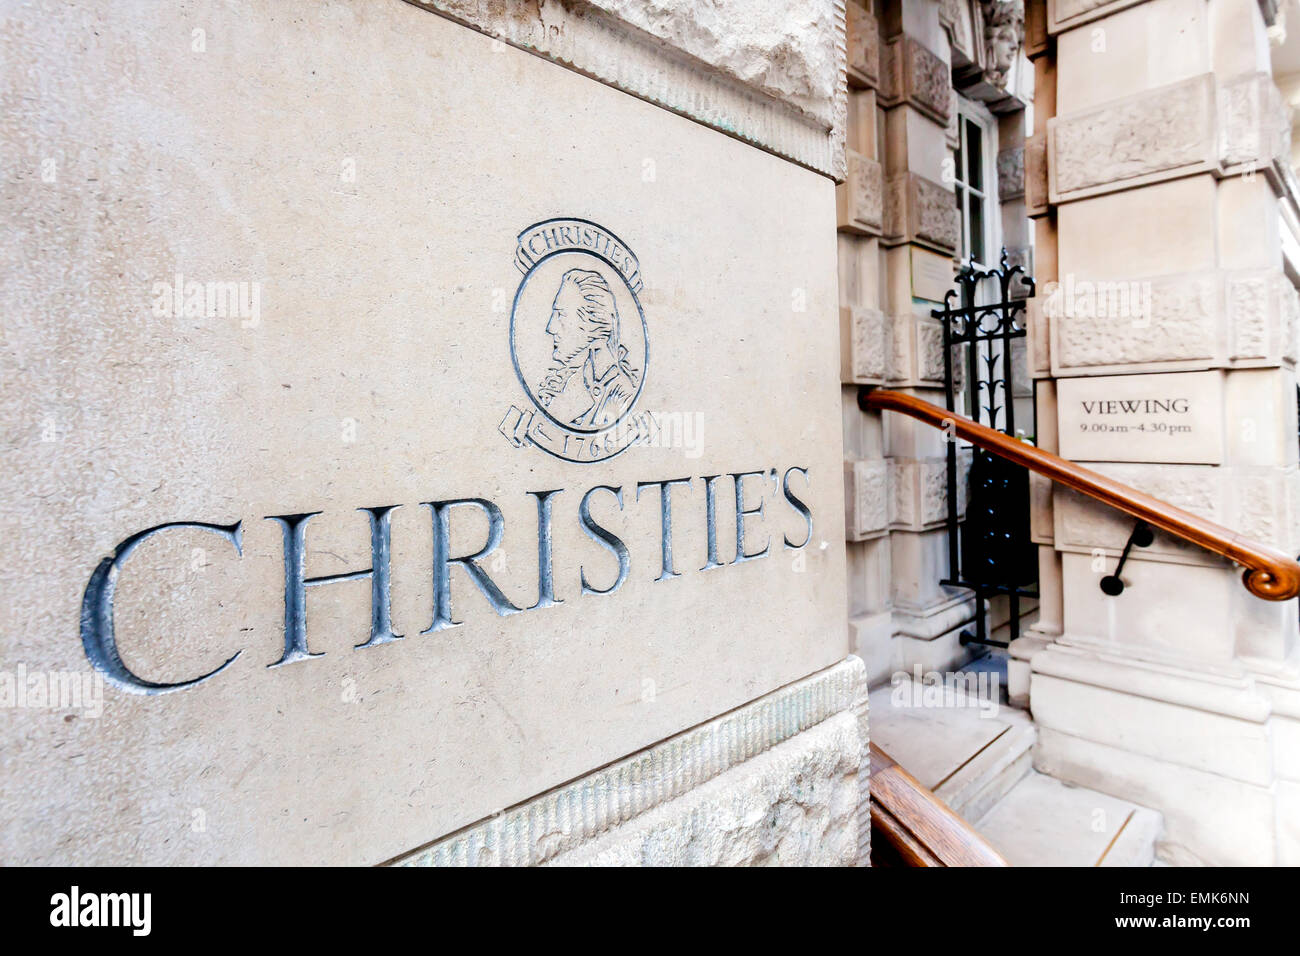 Logo, plaque sur la maison d'enchères Christie's, Londres, Angleterre, Royaume-Uni Banque D'Images